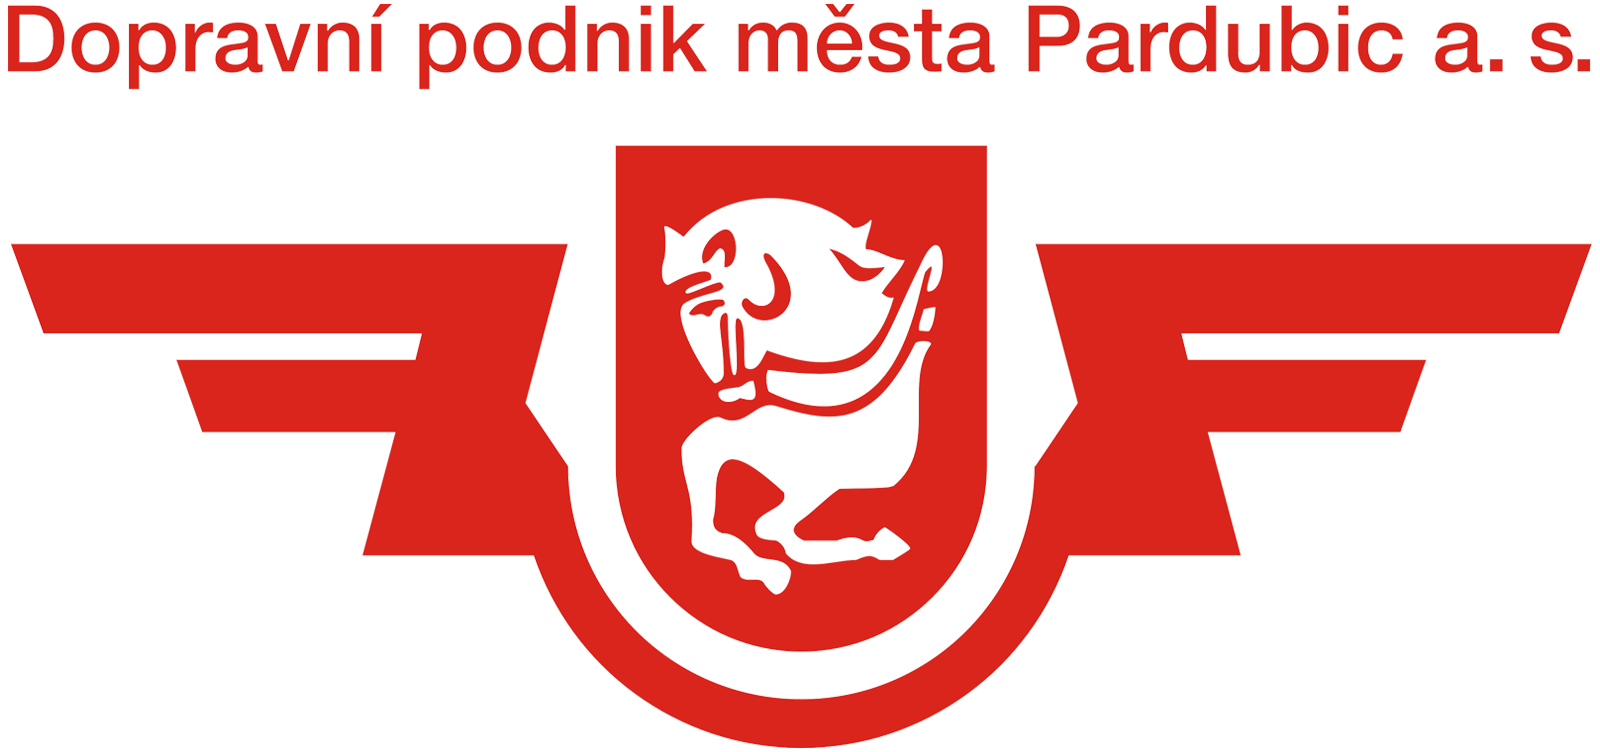 Dopravn podnik Pardubice